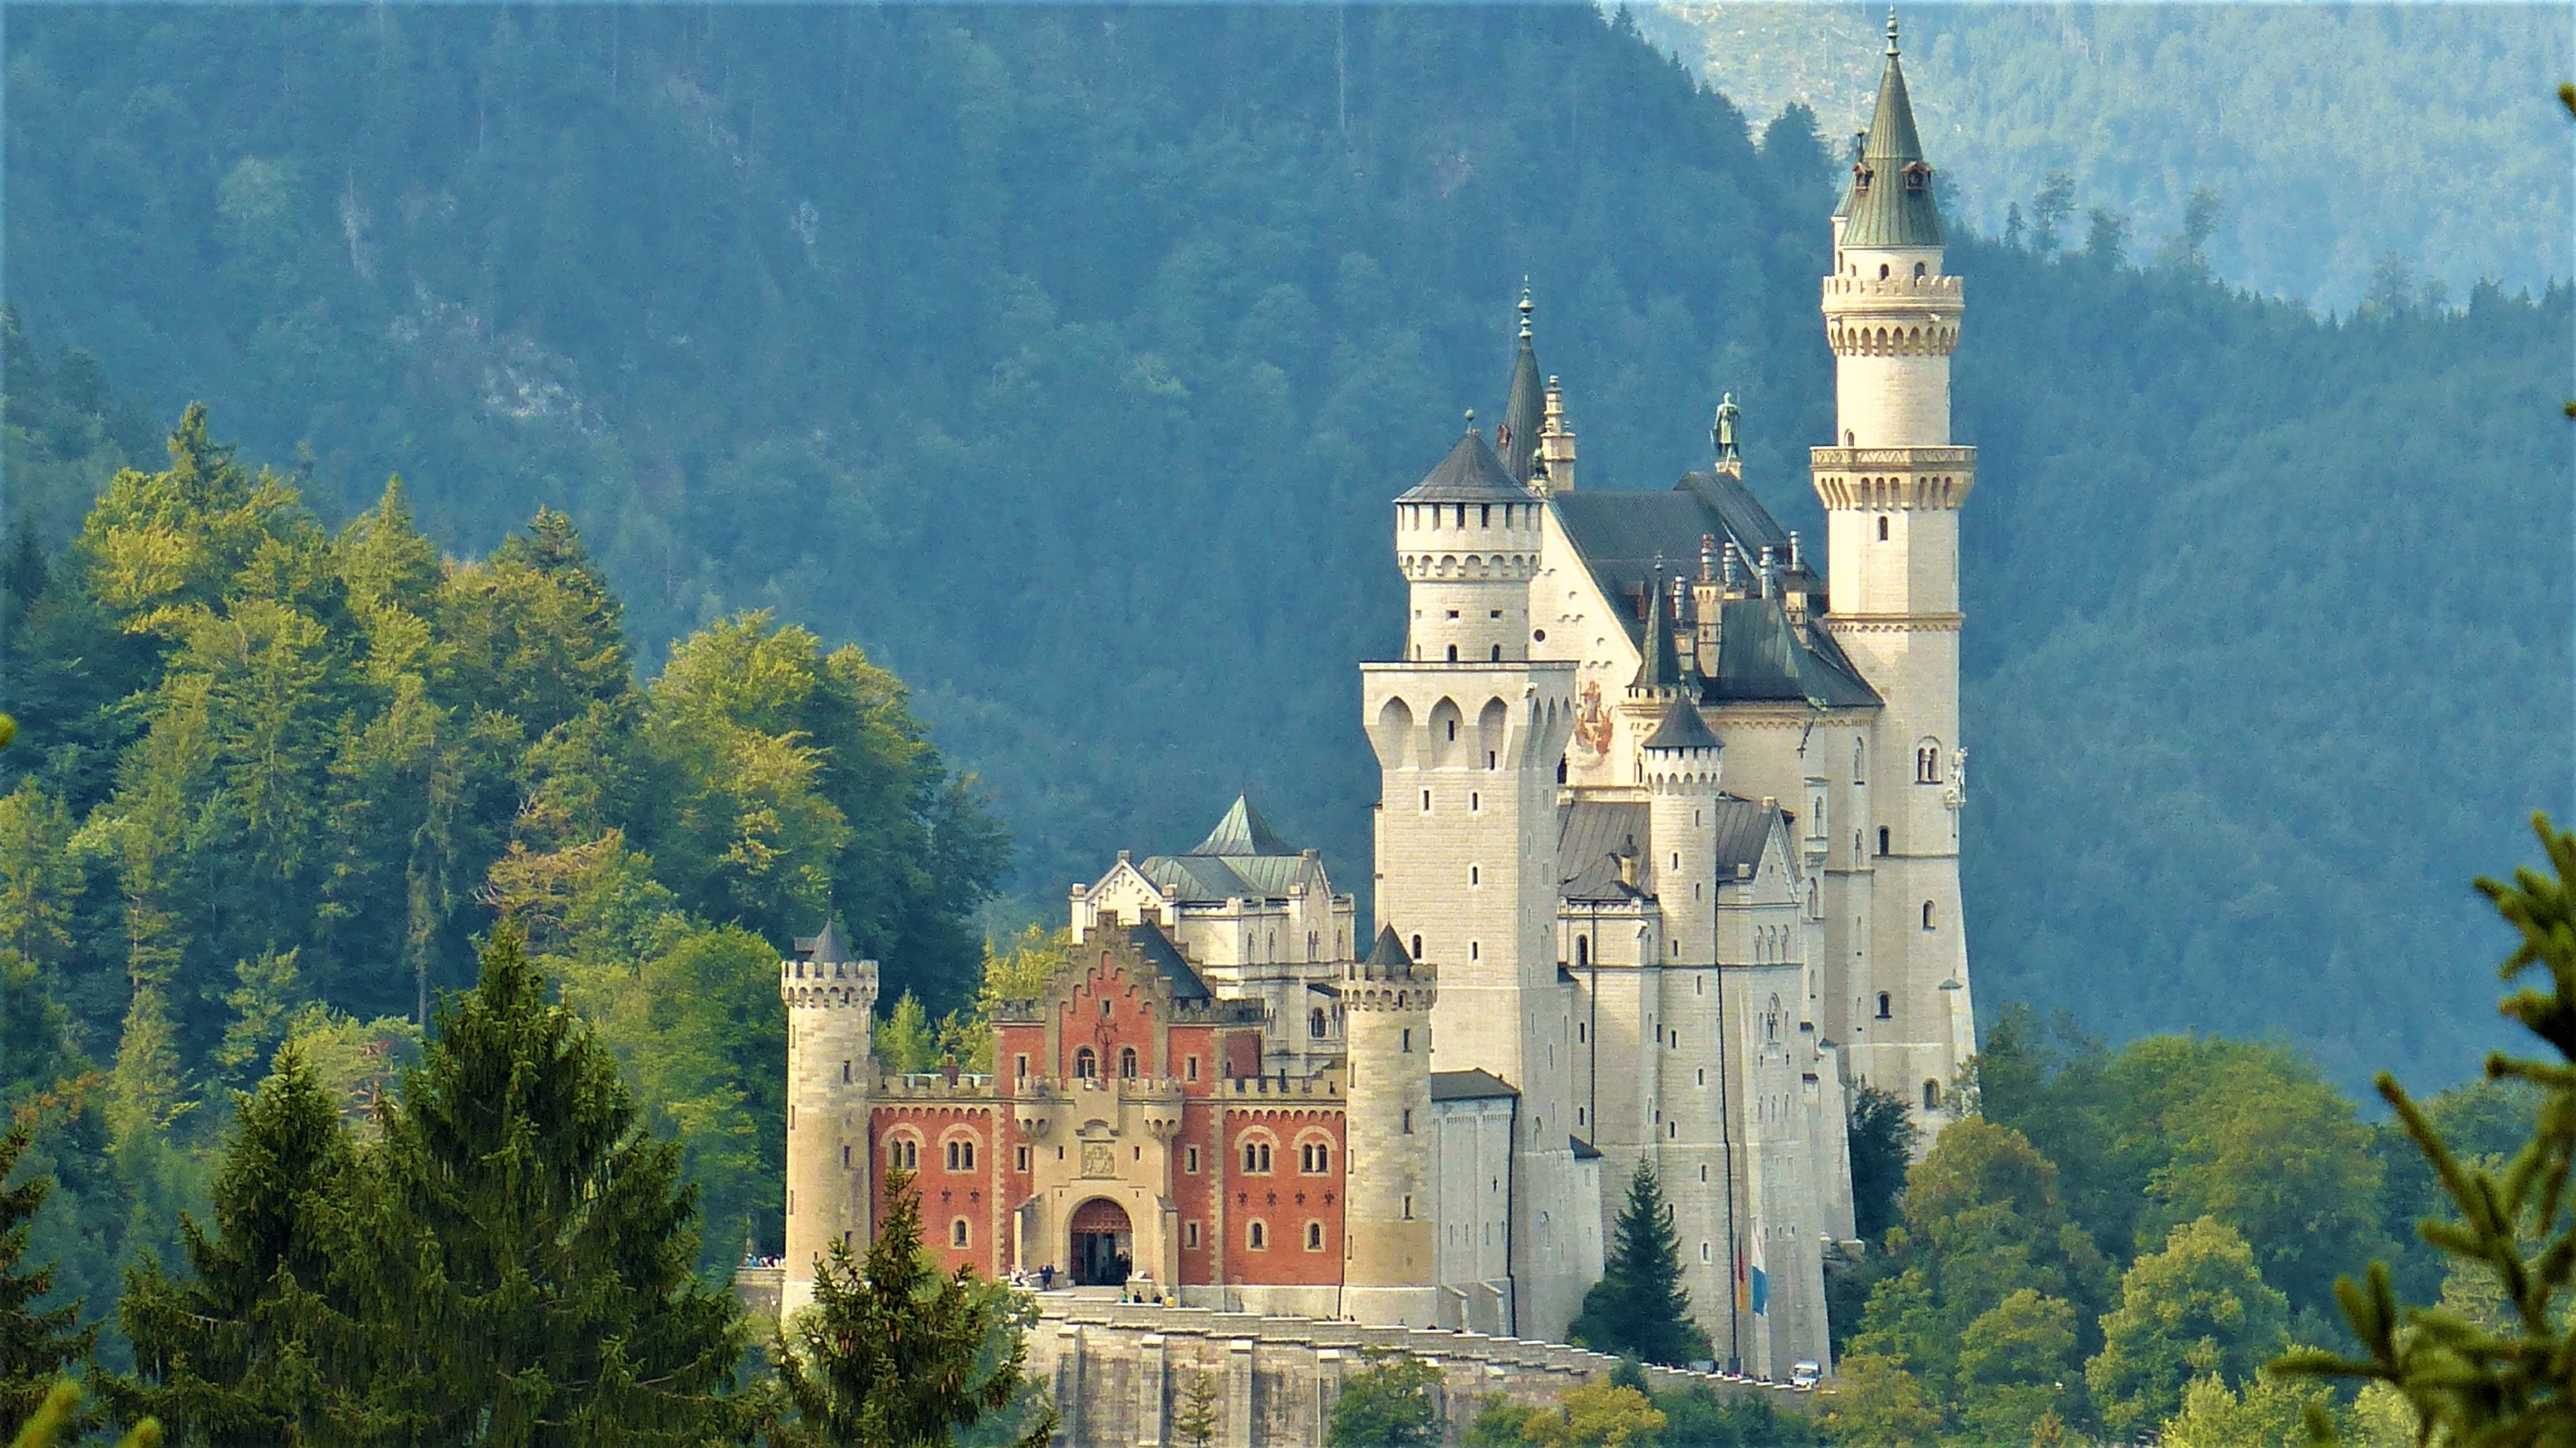 Zamek Neuschwanstein w Bawarii to jeden z najbardziej znanych zamków na świecie